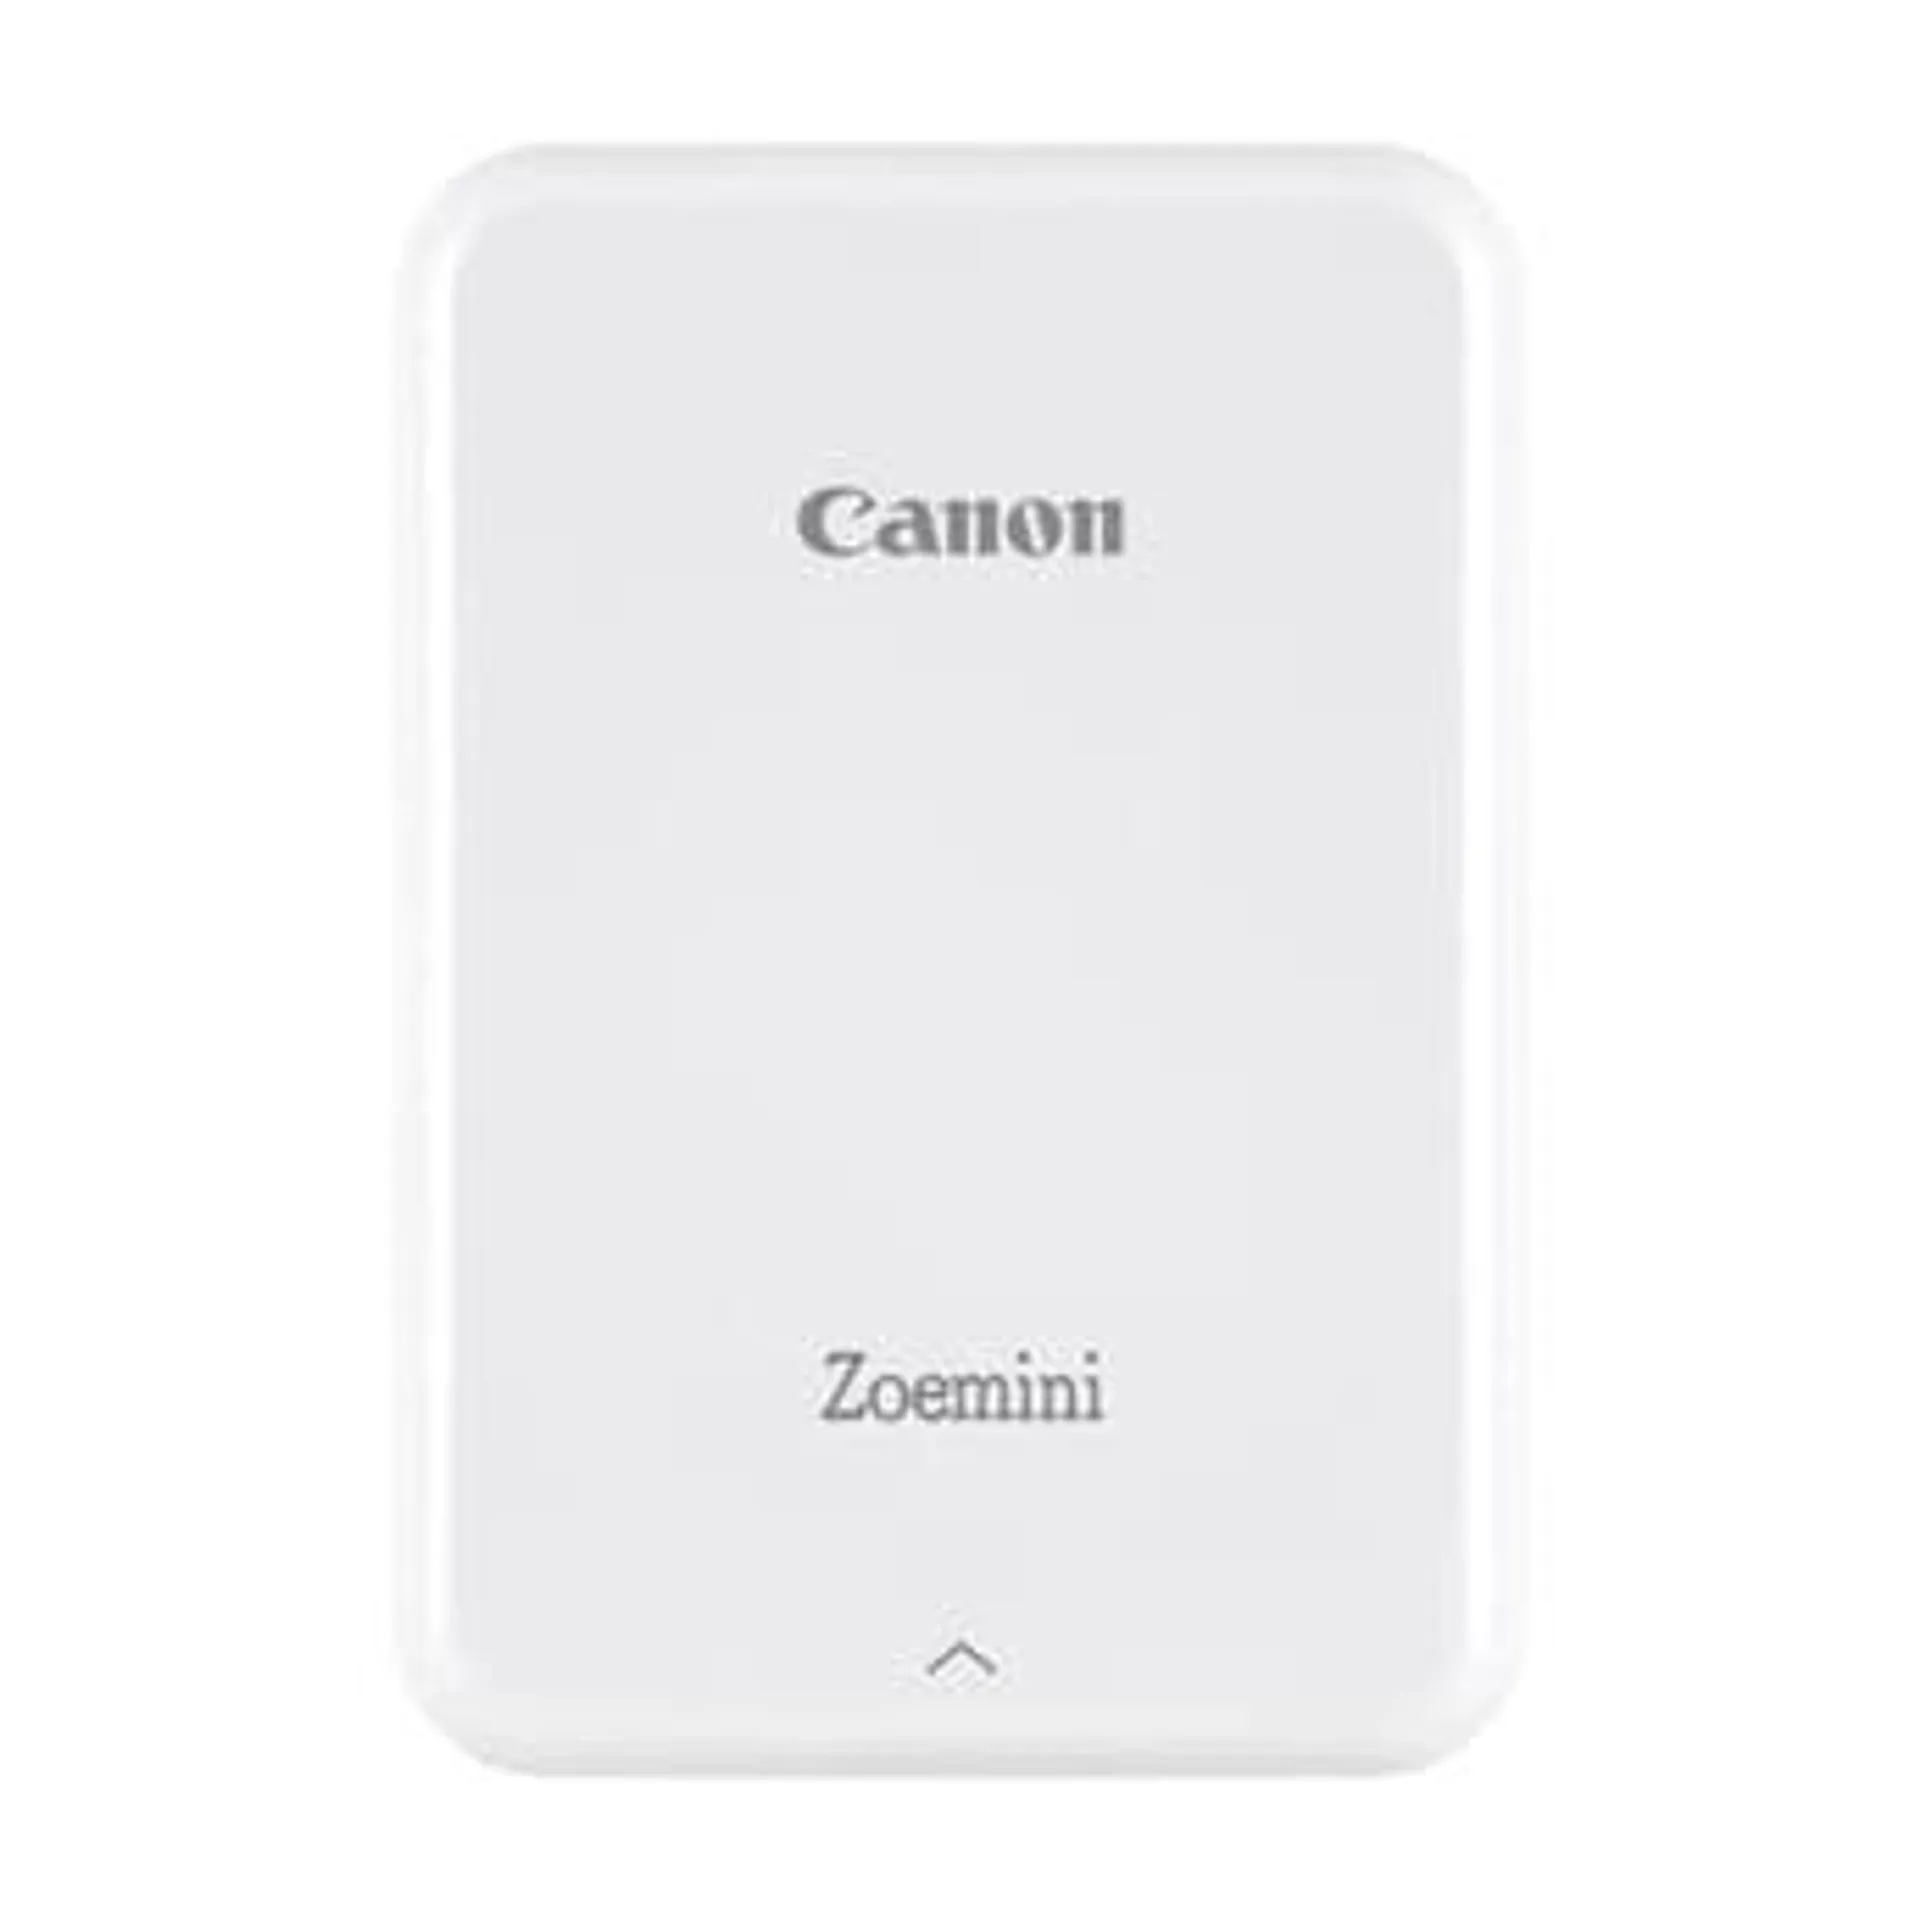 Canon Zoemini Instant Photo Printer (White)